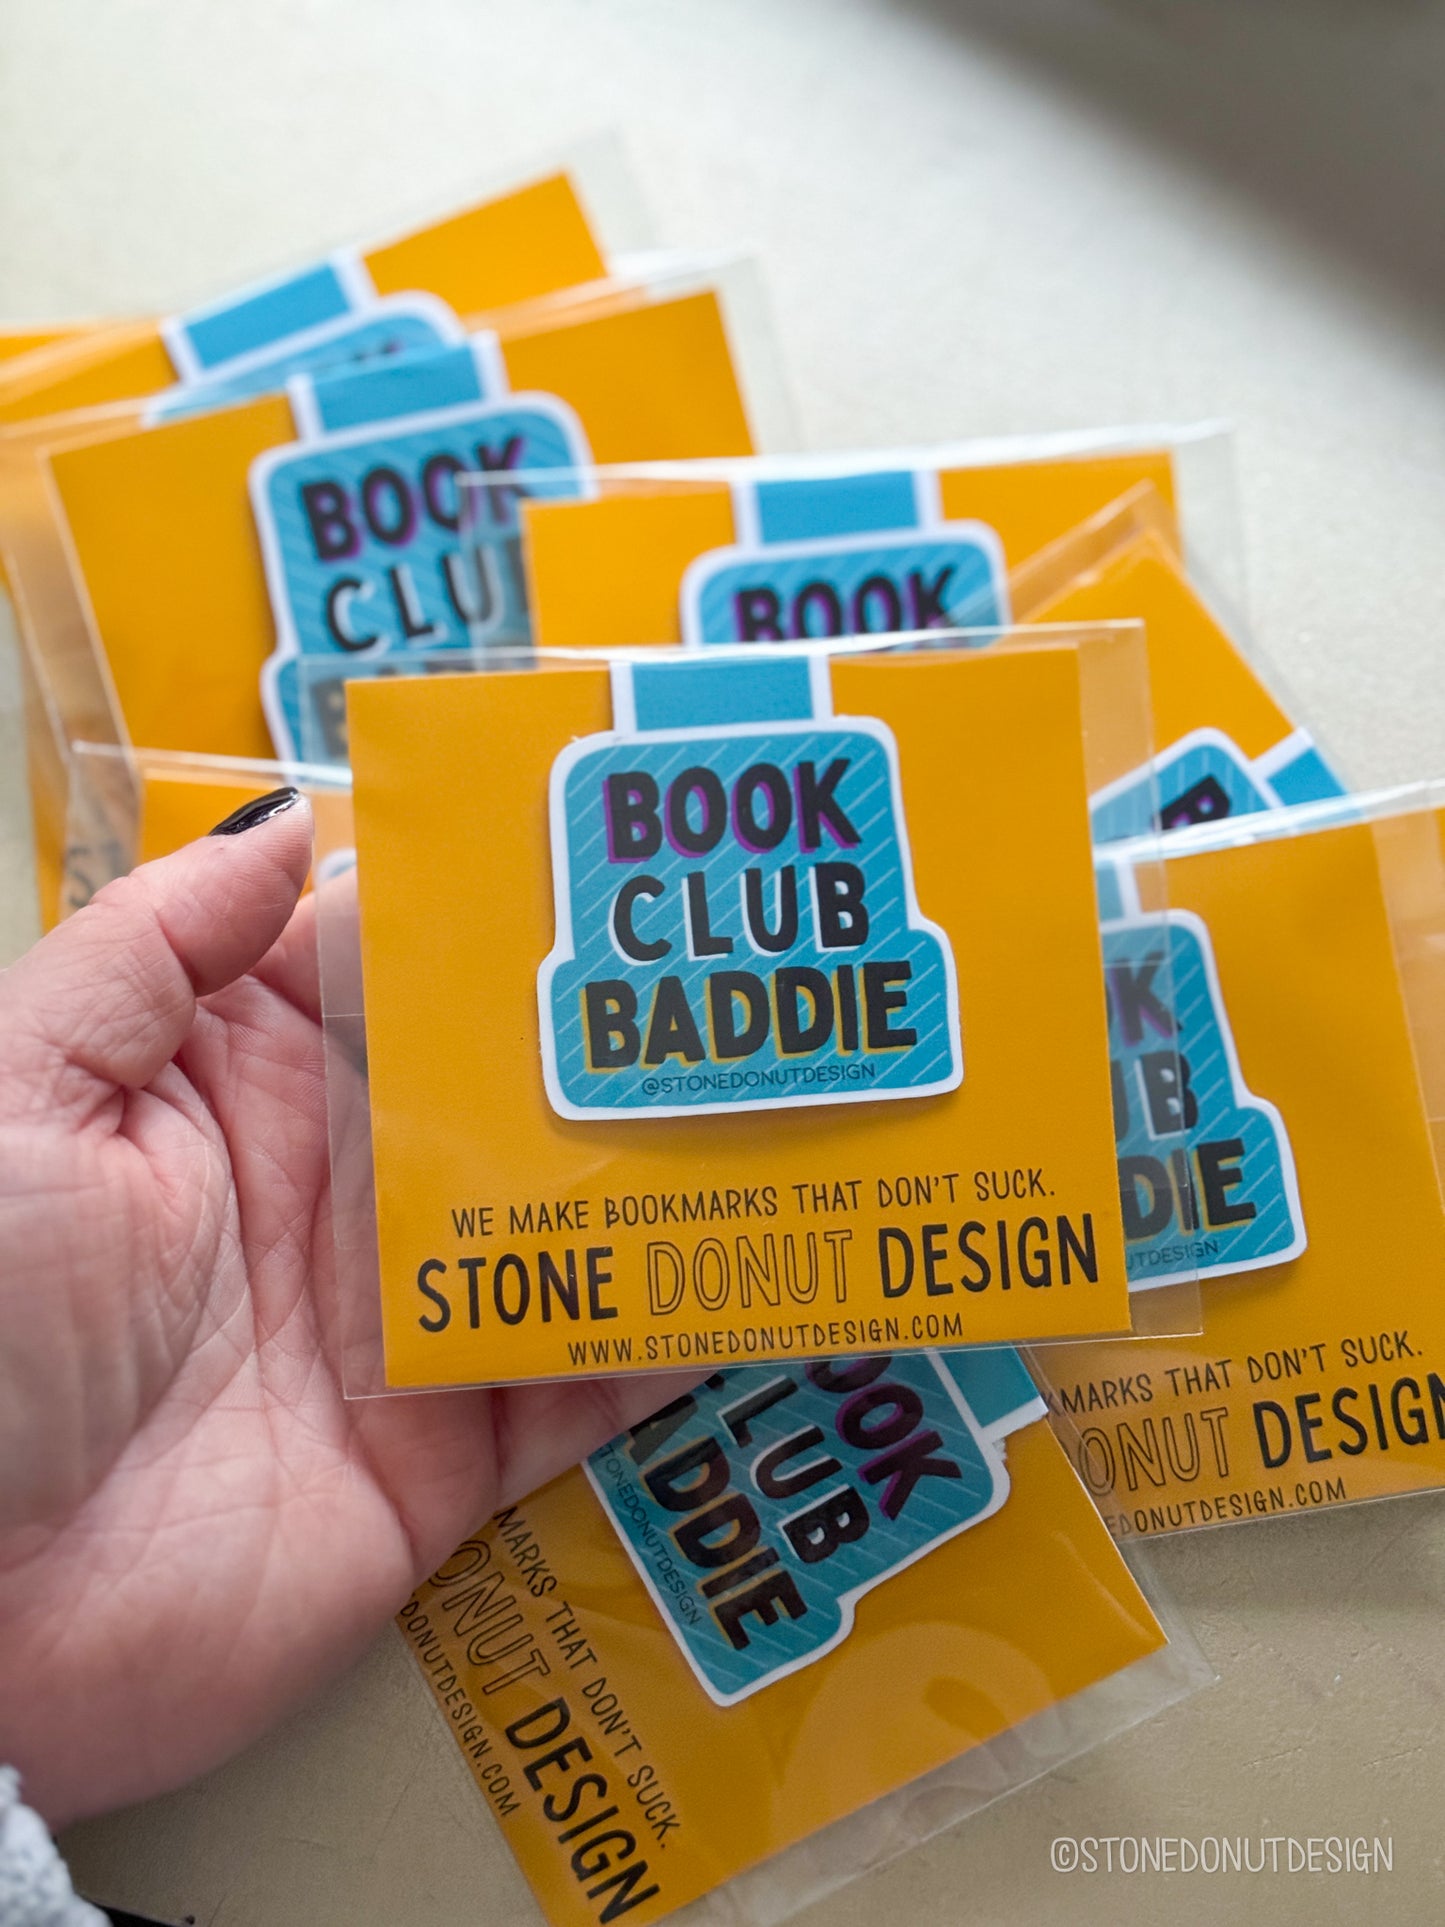 Book Club Baddie Magnetic Bookmark